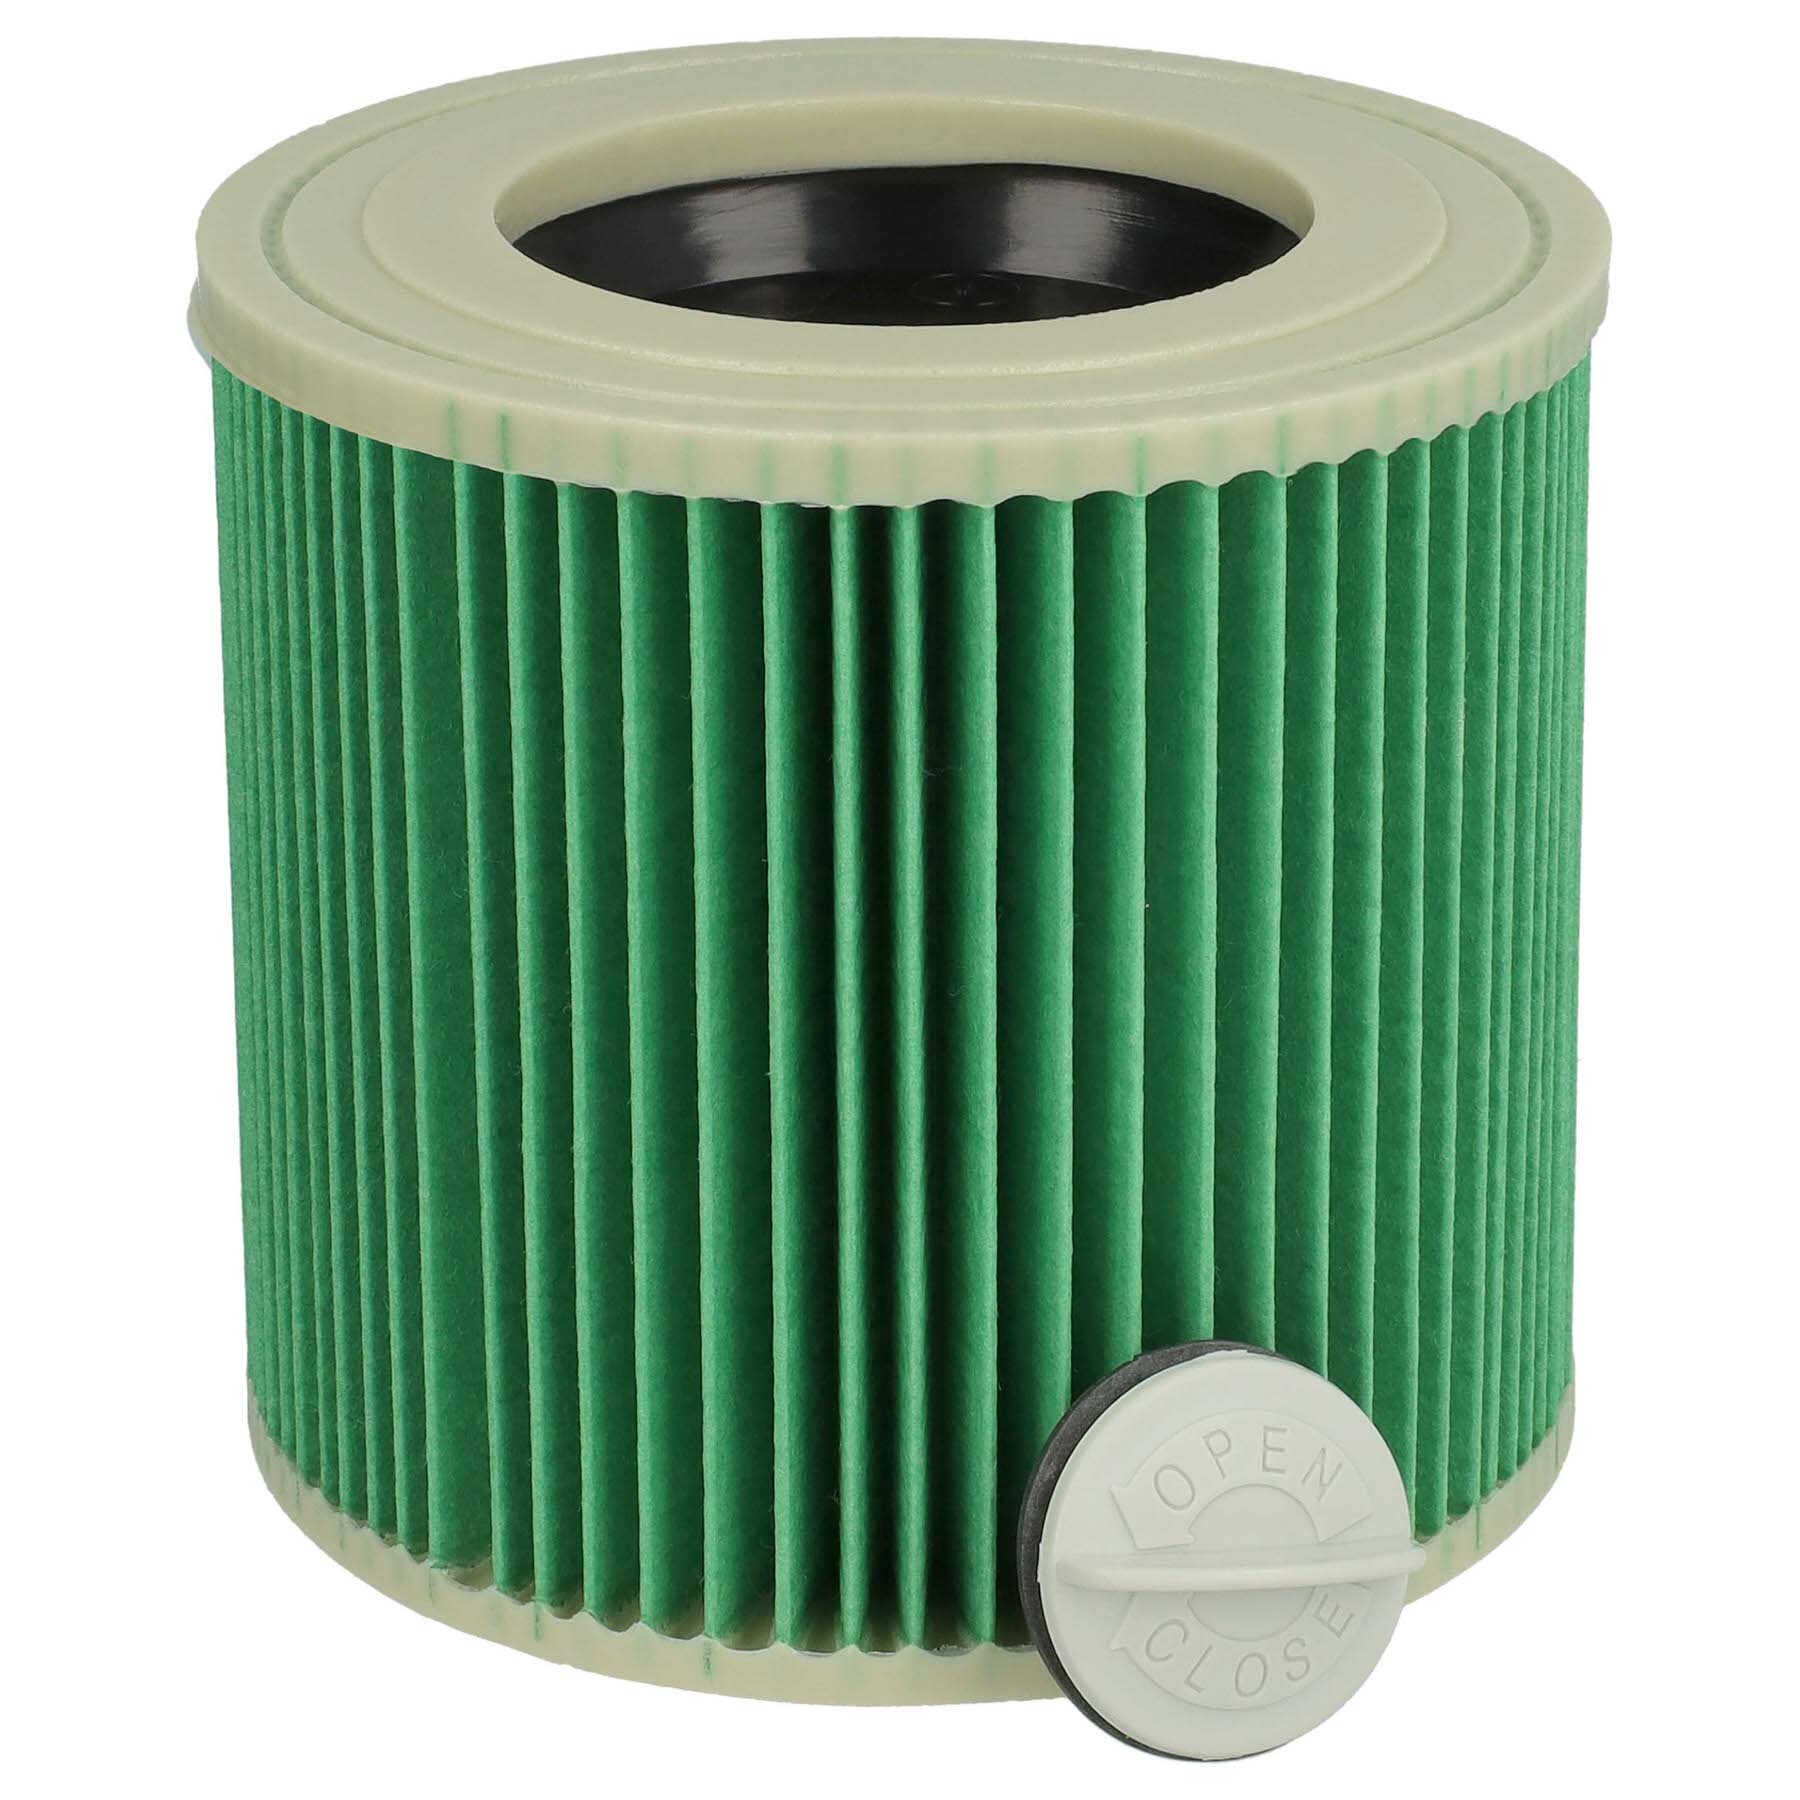 Vhbw filtro a pieghe piatte compatibile con Hoover 141 aspiratore  umido/secco - Cartuccia filtrante, verde